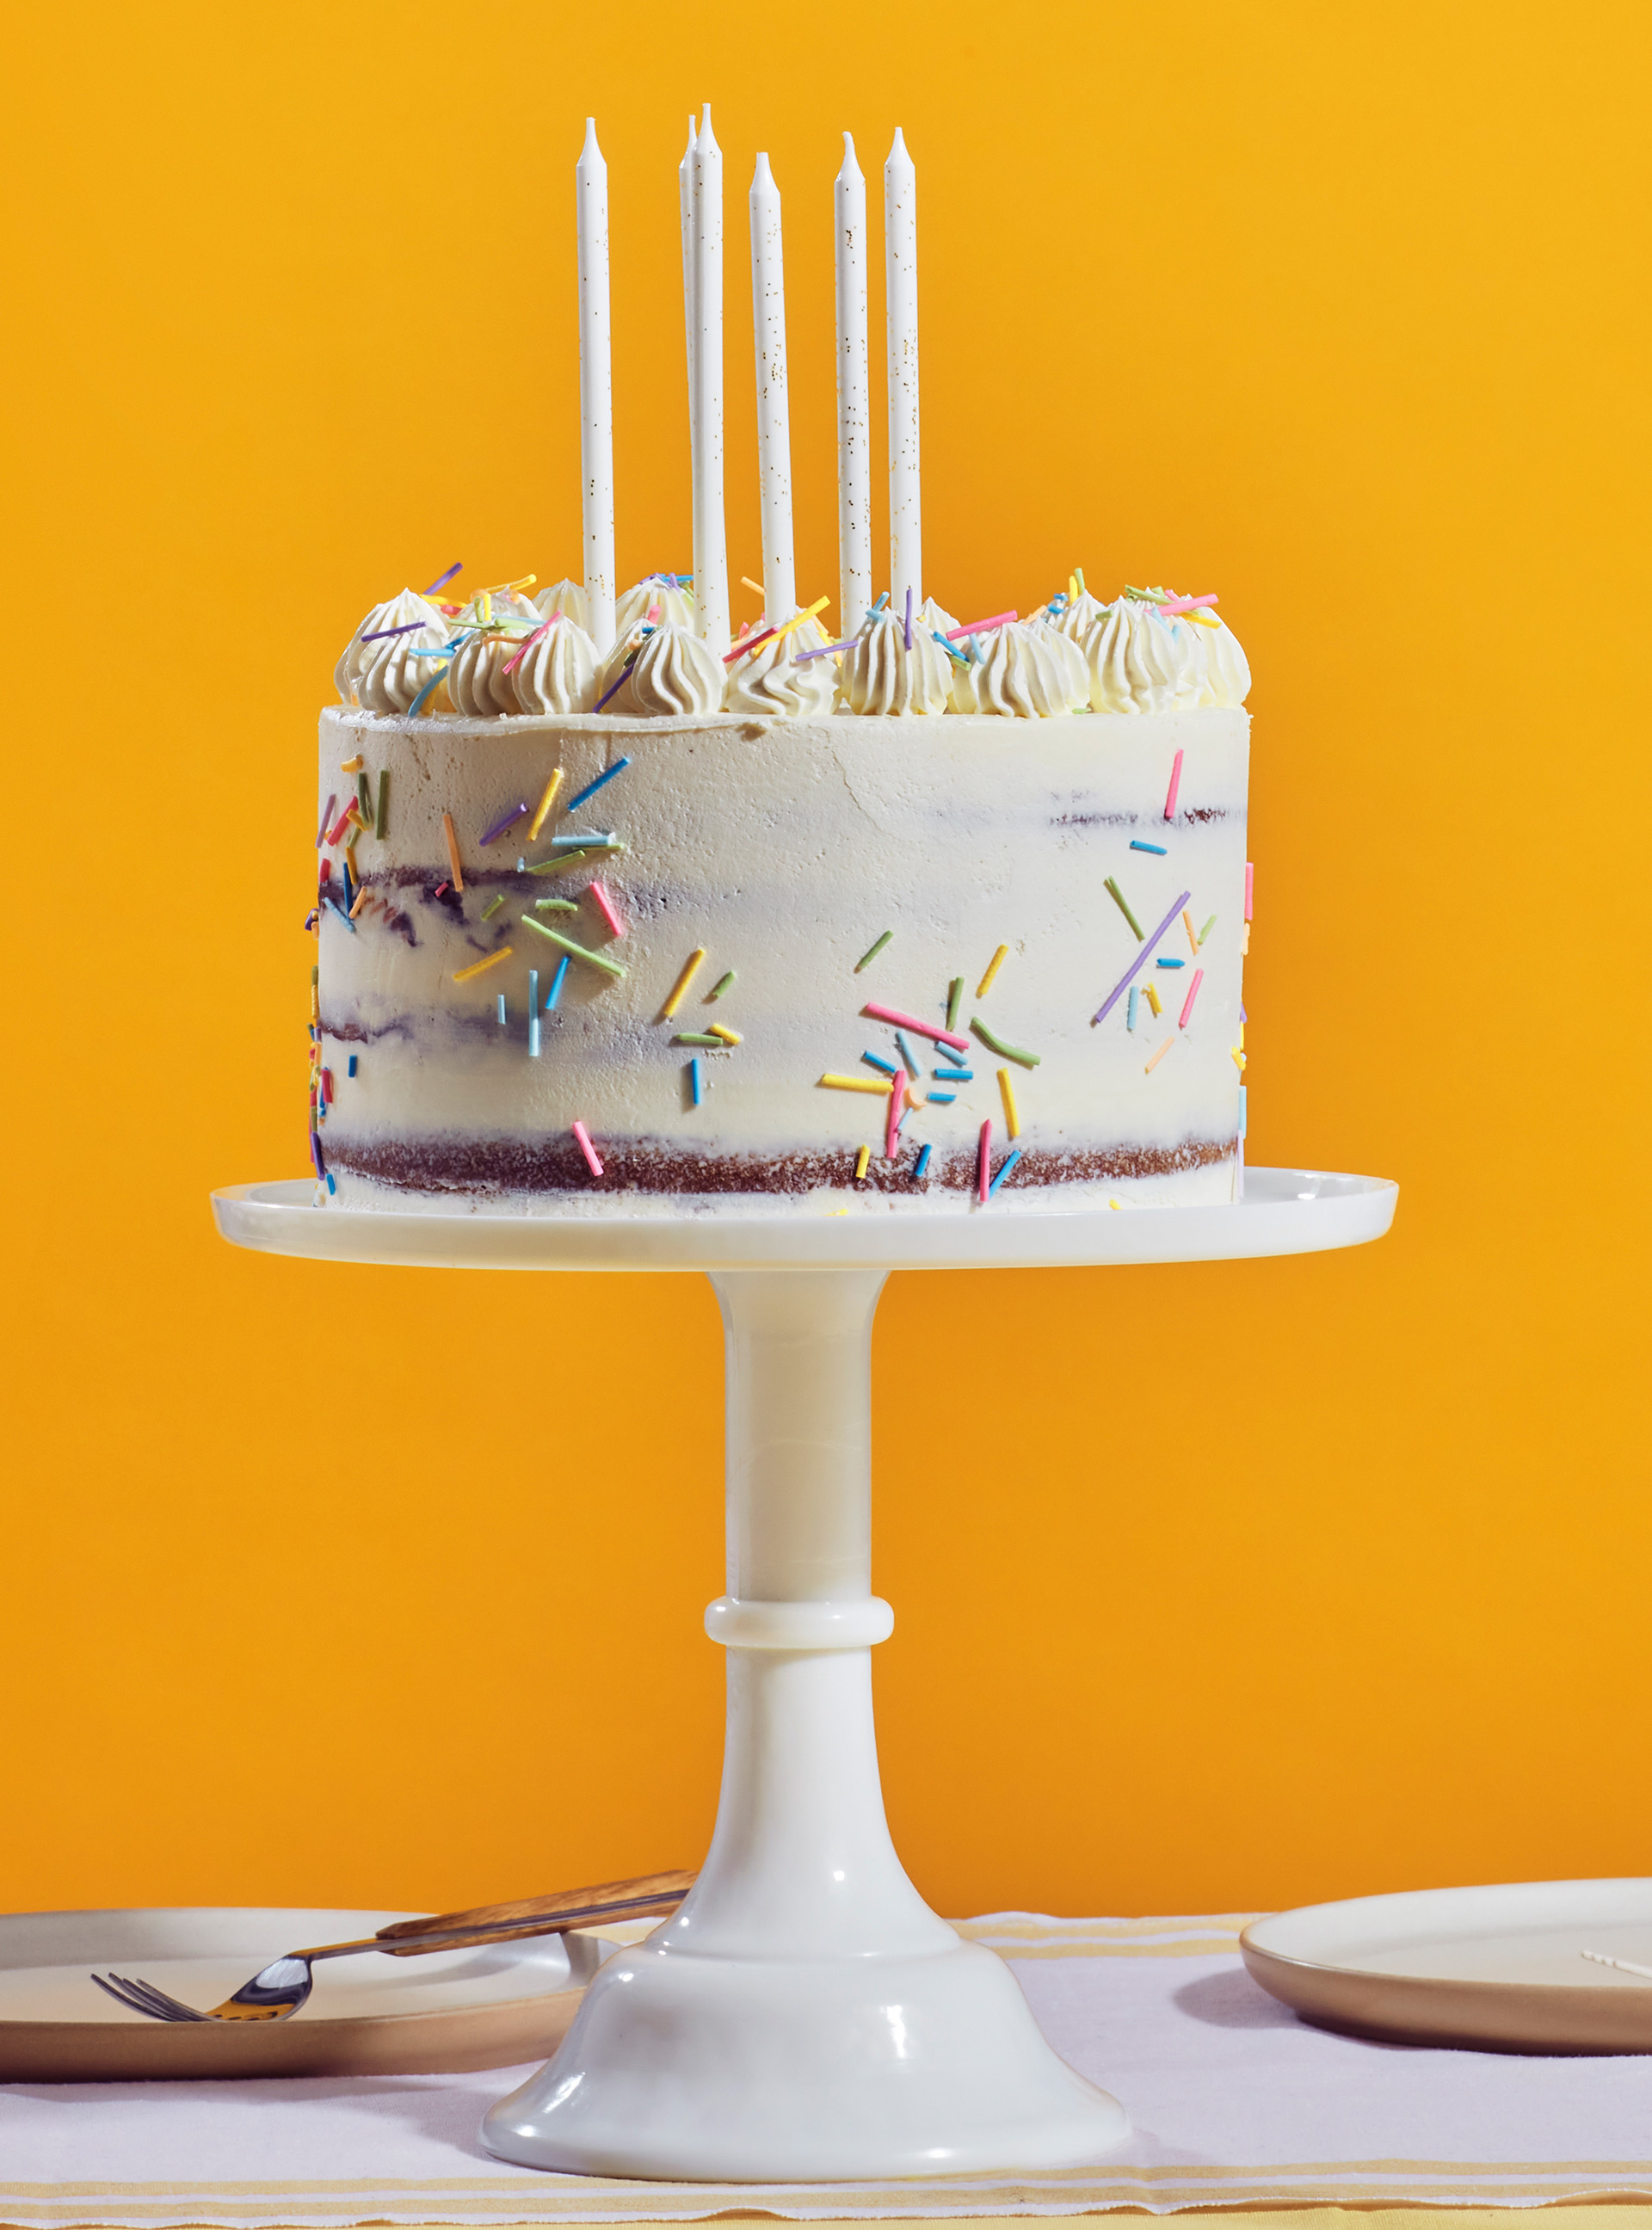 Gâteau d'anniversaire aux confettis